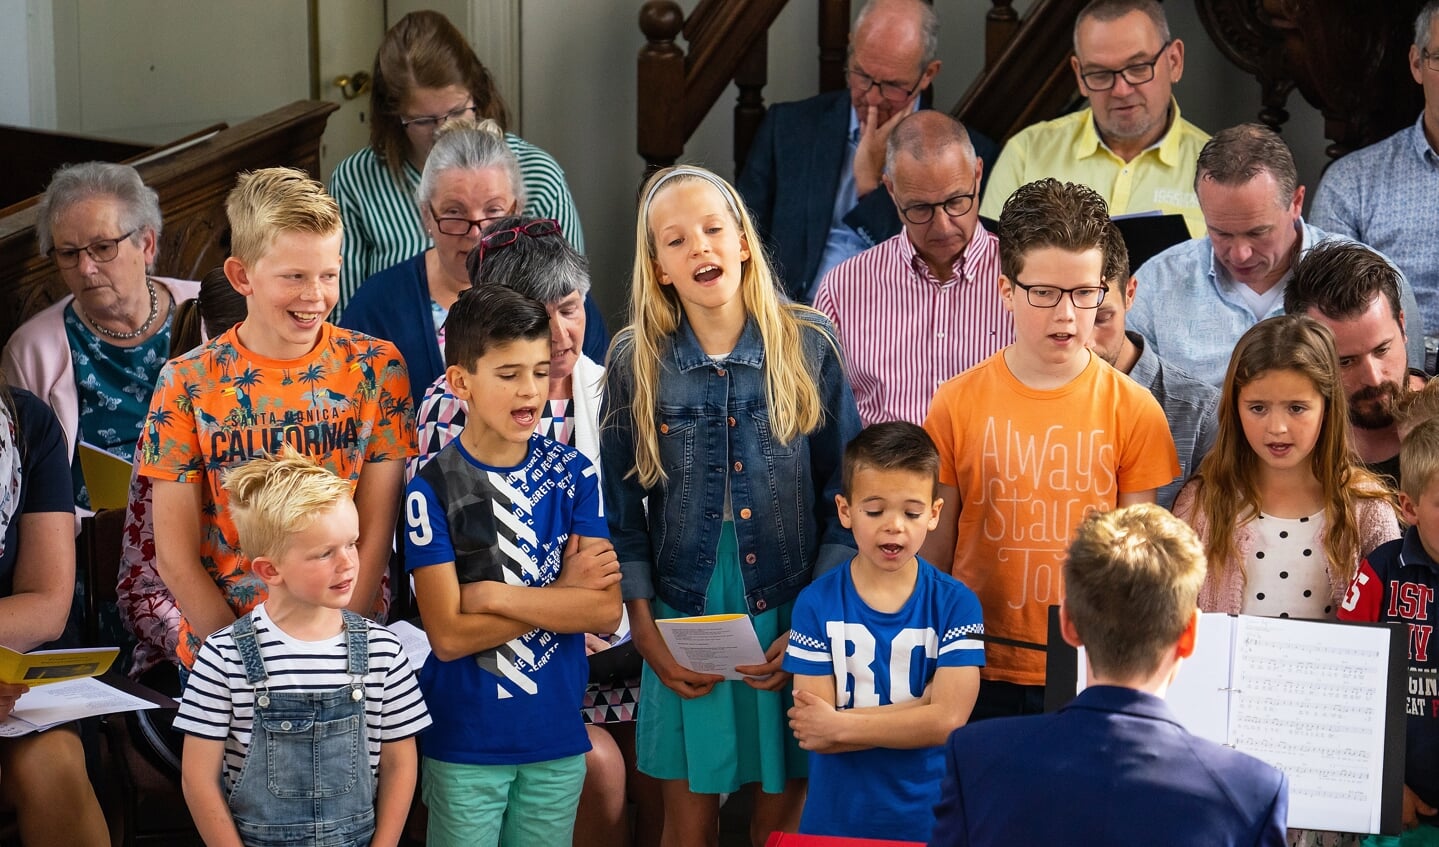 Paaszangdienst in de Hervormde Kerk in Everdingen